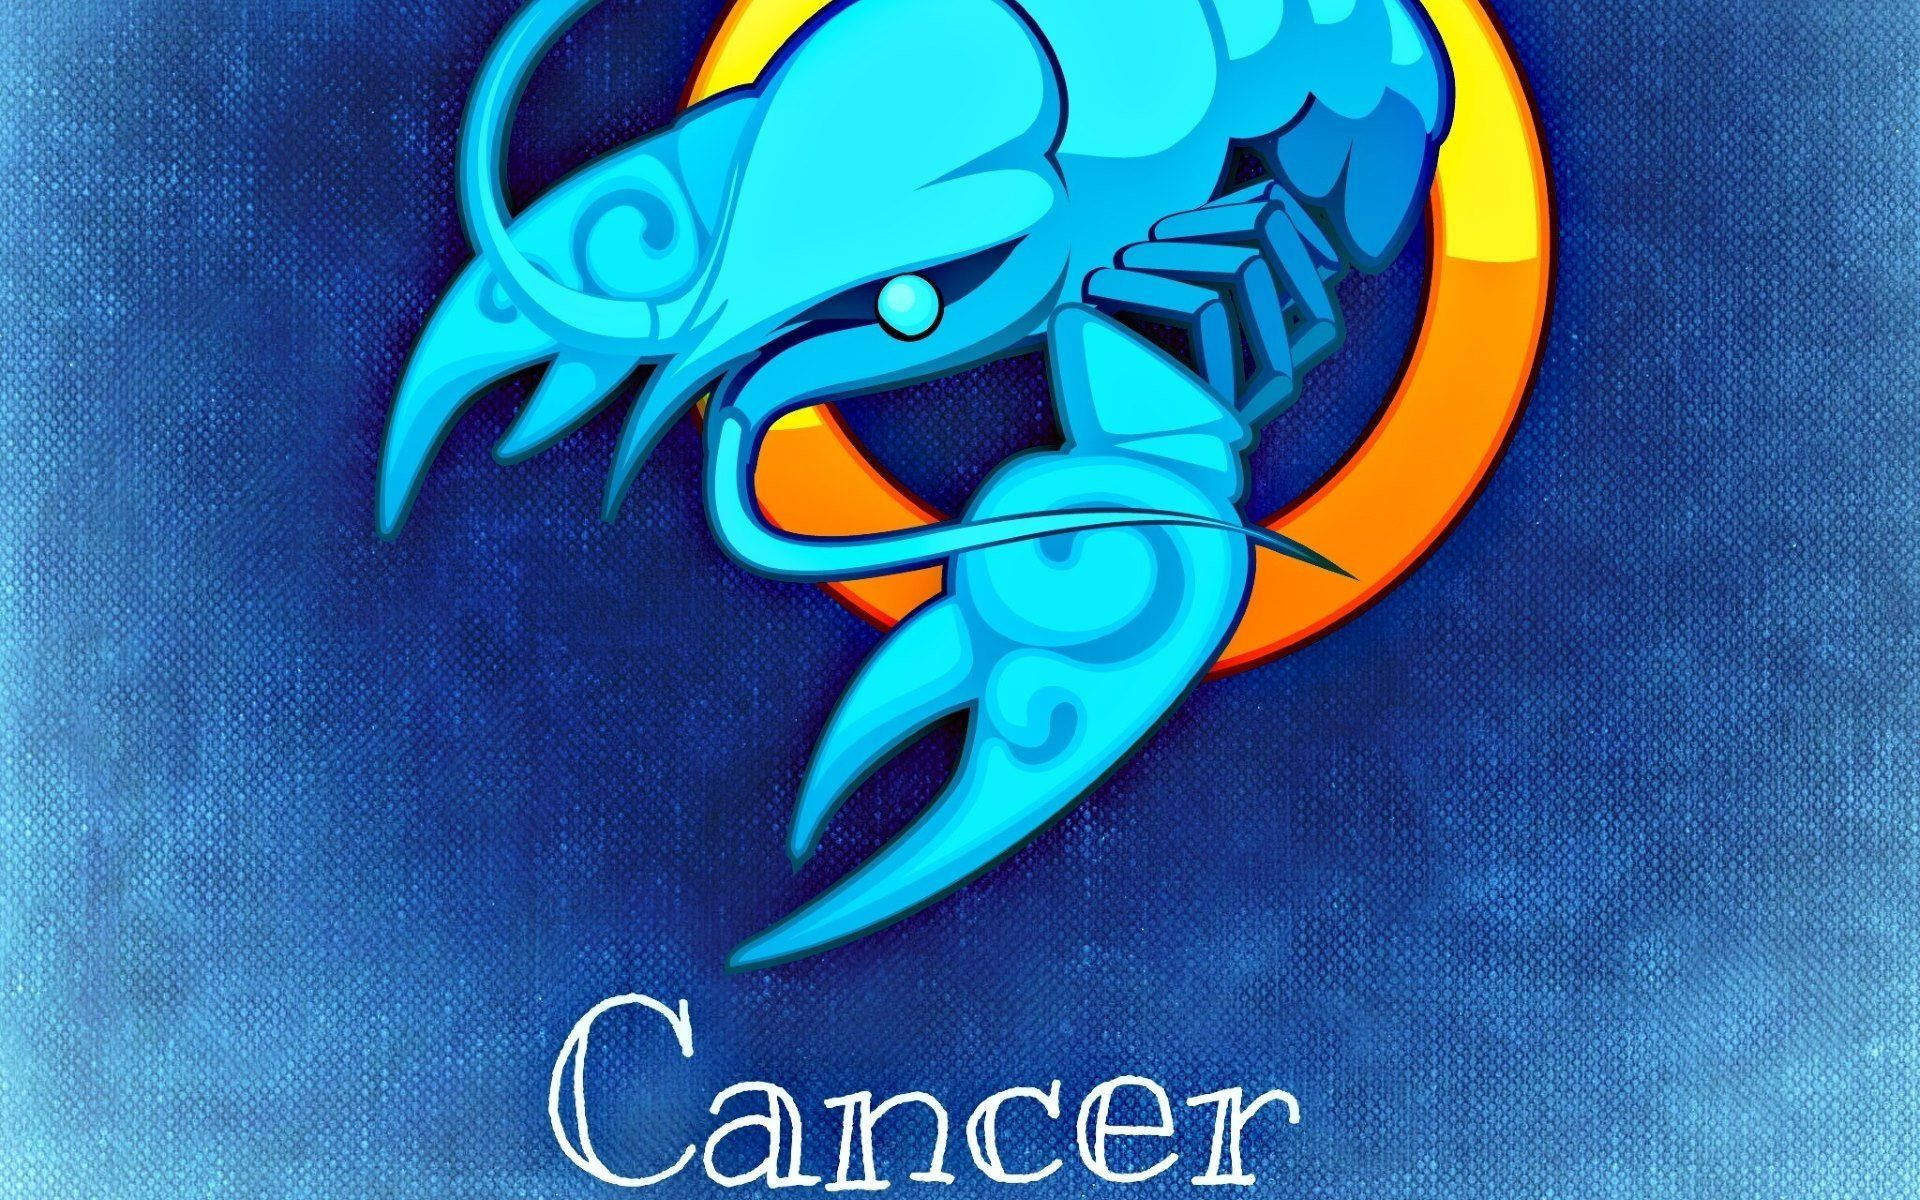 Krebszeichenblaue Flusskrebs-symbol Wallpaper